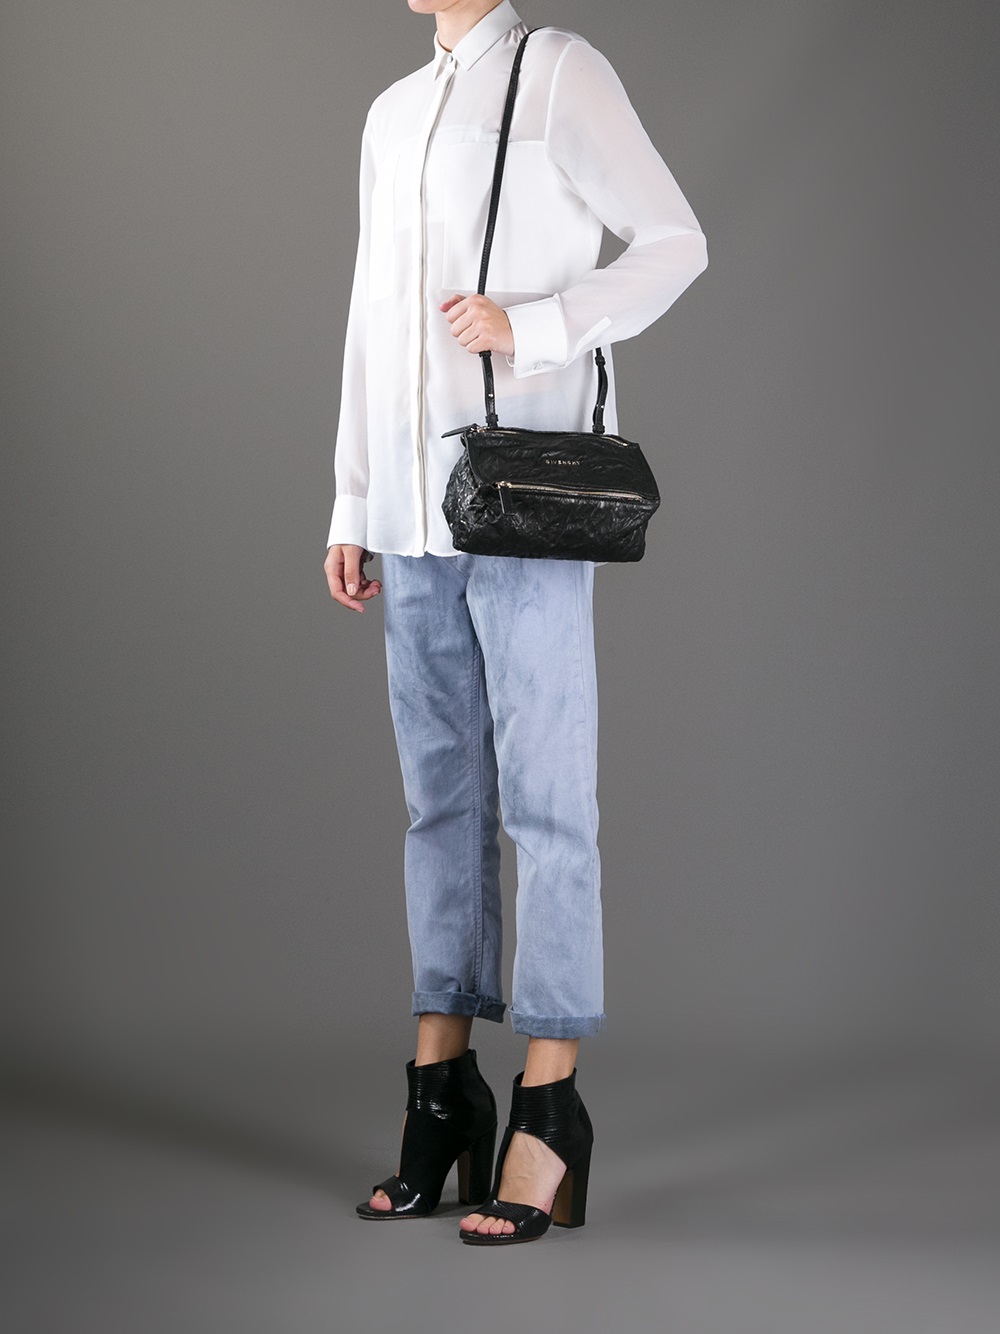 Givenchy Mini Pandora Shoulder Bag in Black - Lyst